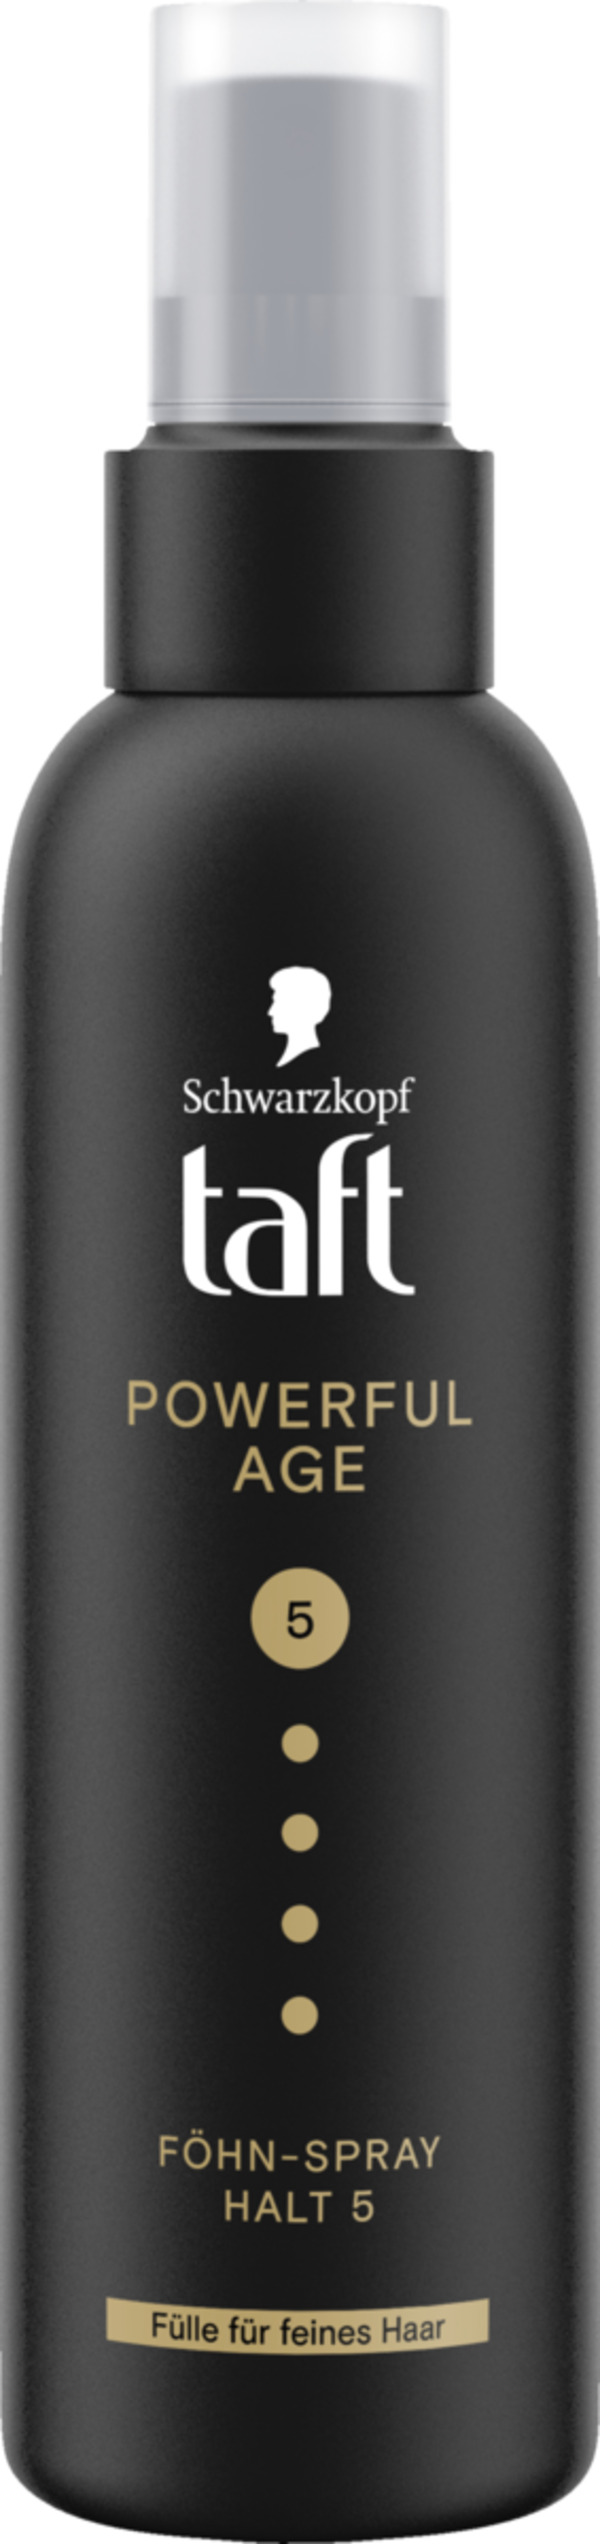 Bild 1 von Taft Föhn-Spray Powerful Age